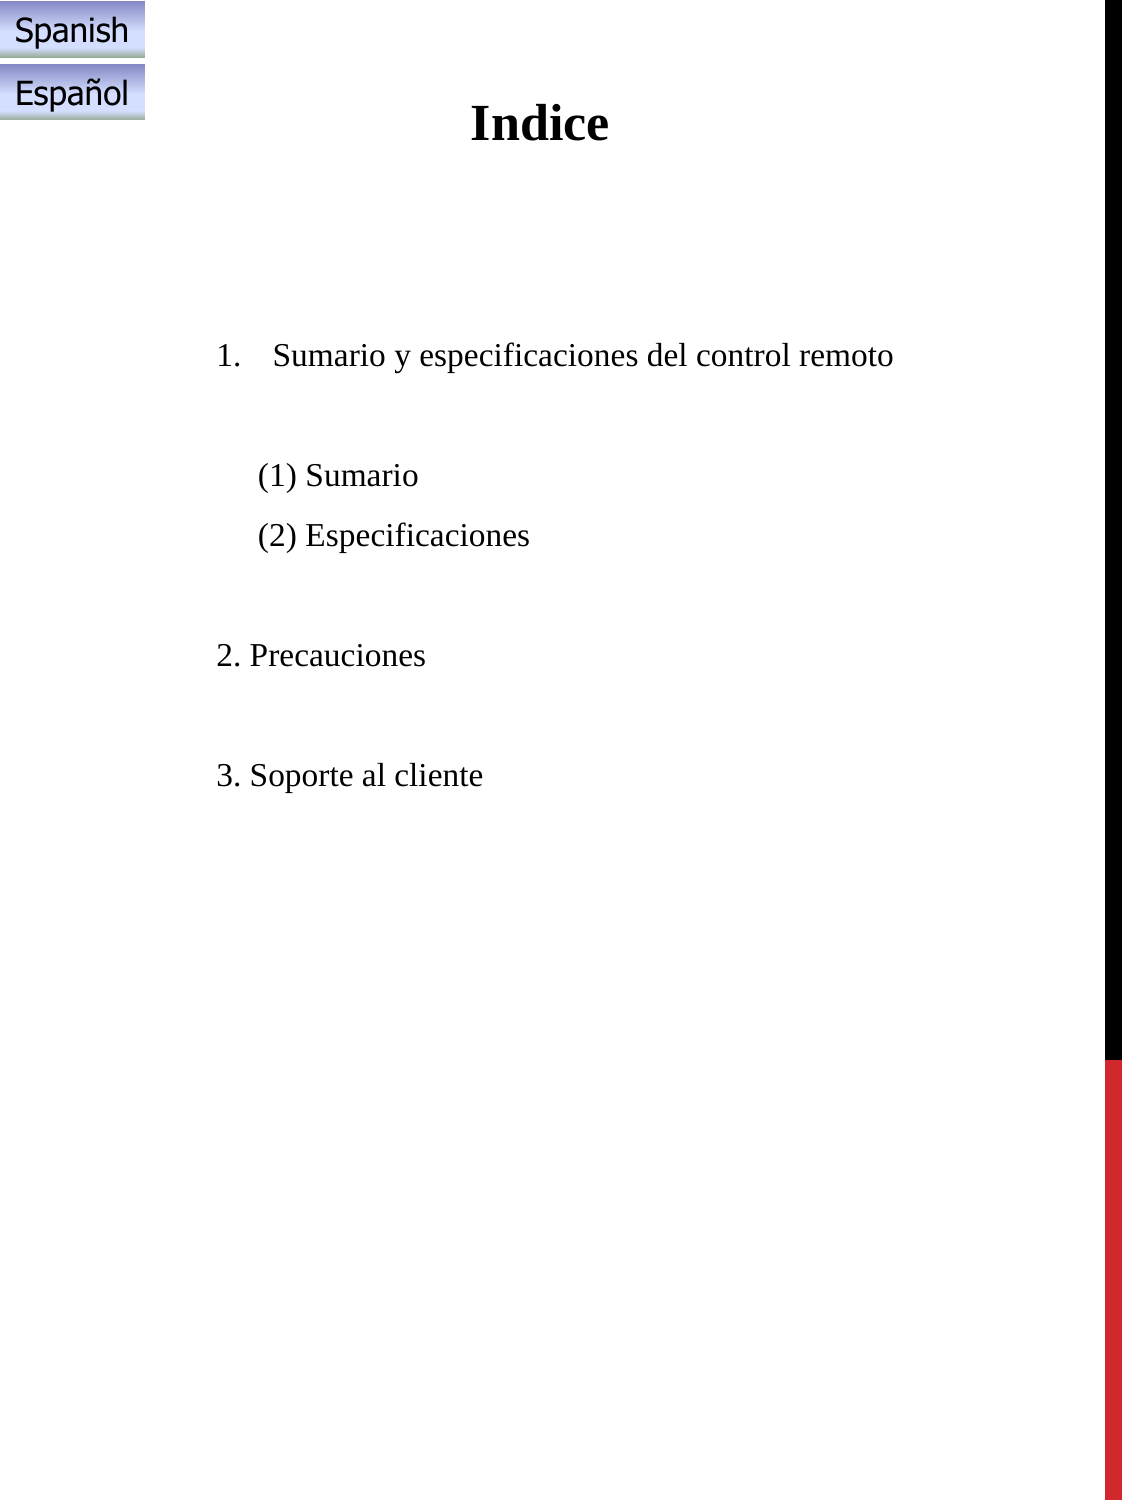 Indice1. Sumario y especificaciones del control remoto(1) Sumario(2) Especificaciones2. Precauciones3. Soporte al clienteSpanishEspañol